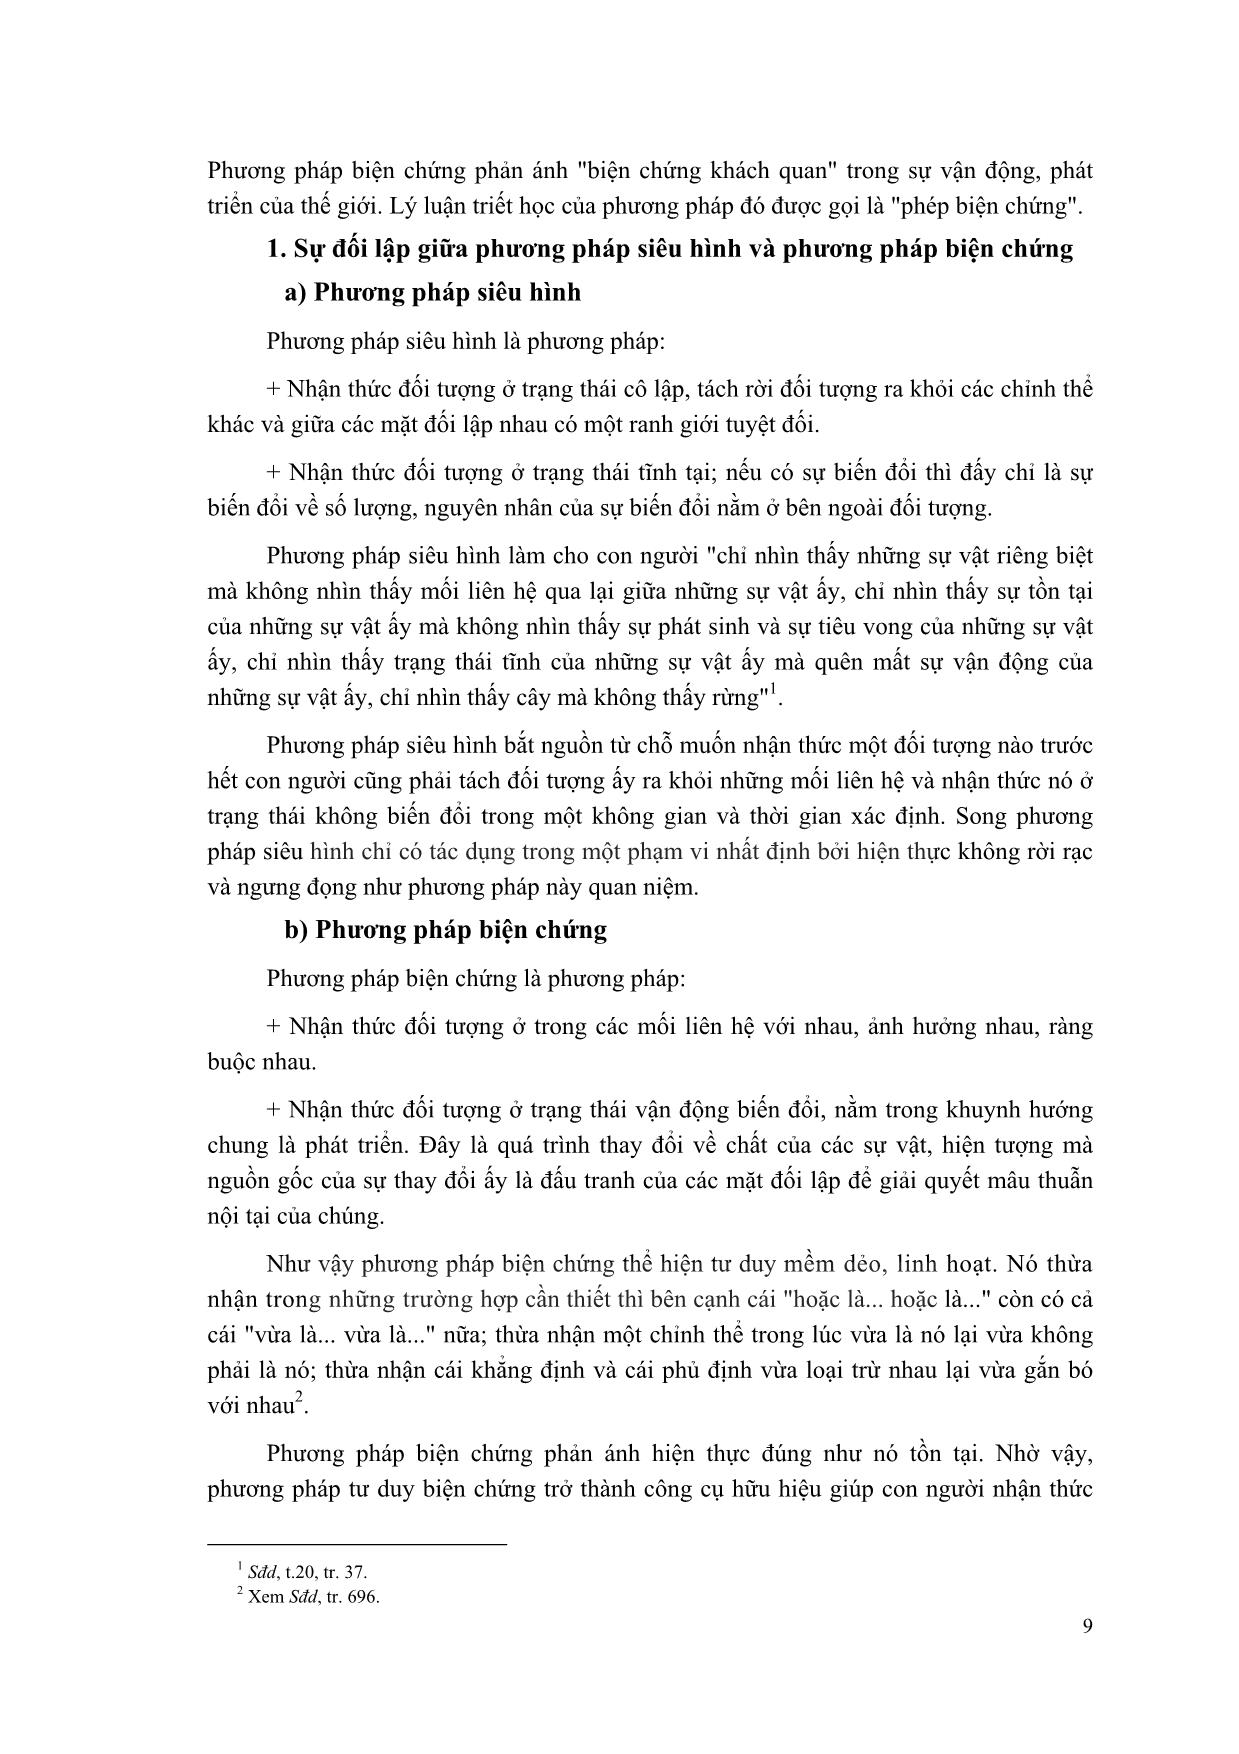 Giáo trình Triết học Mác-Lênin (Mới) trang 10